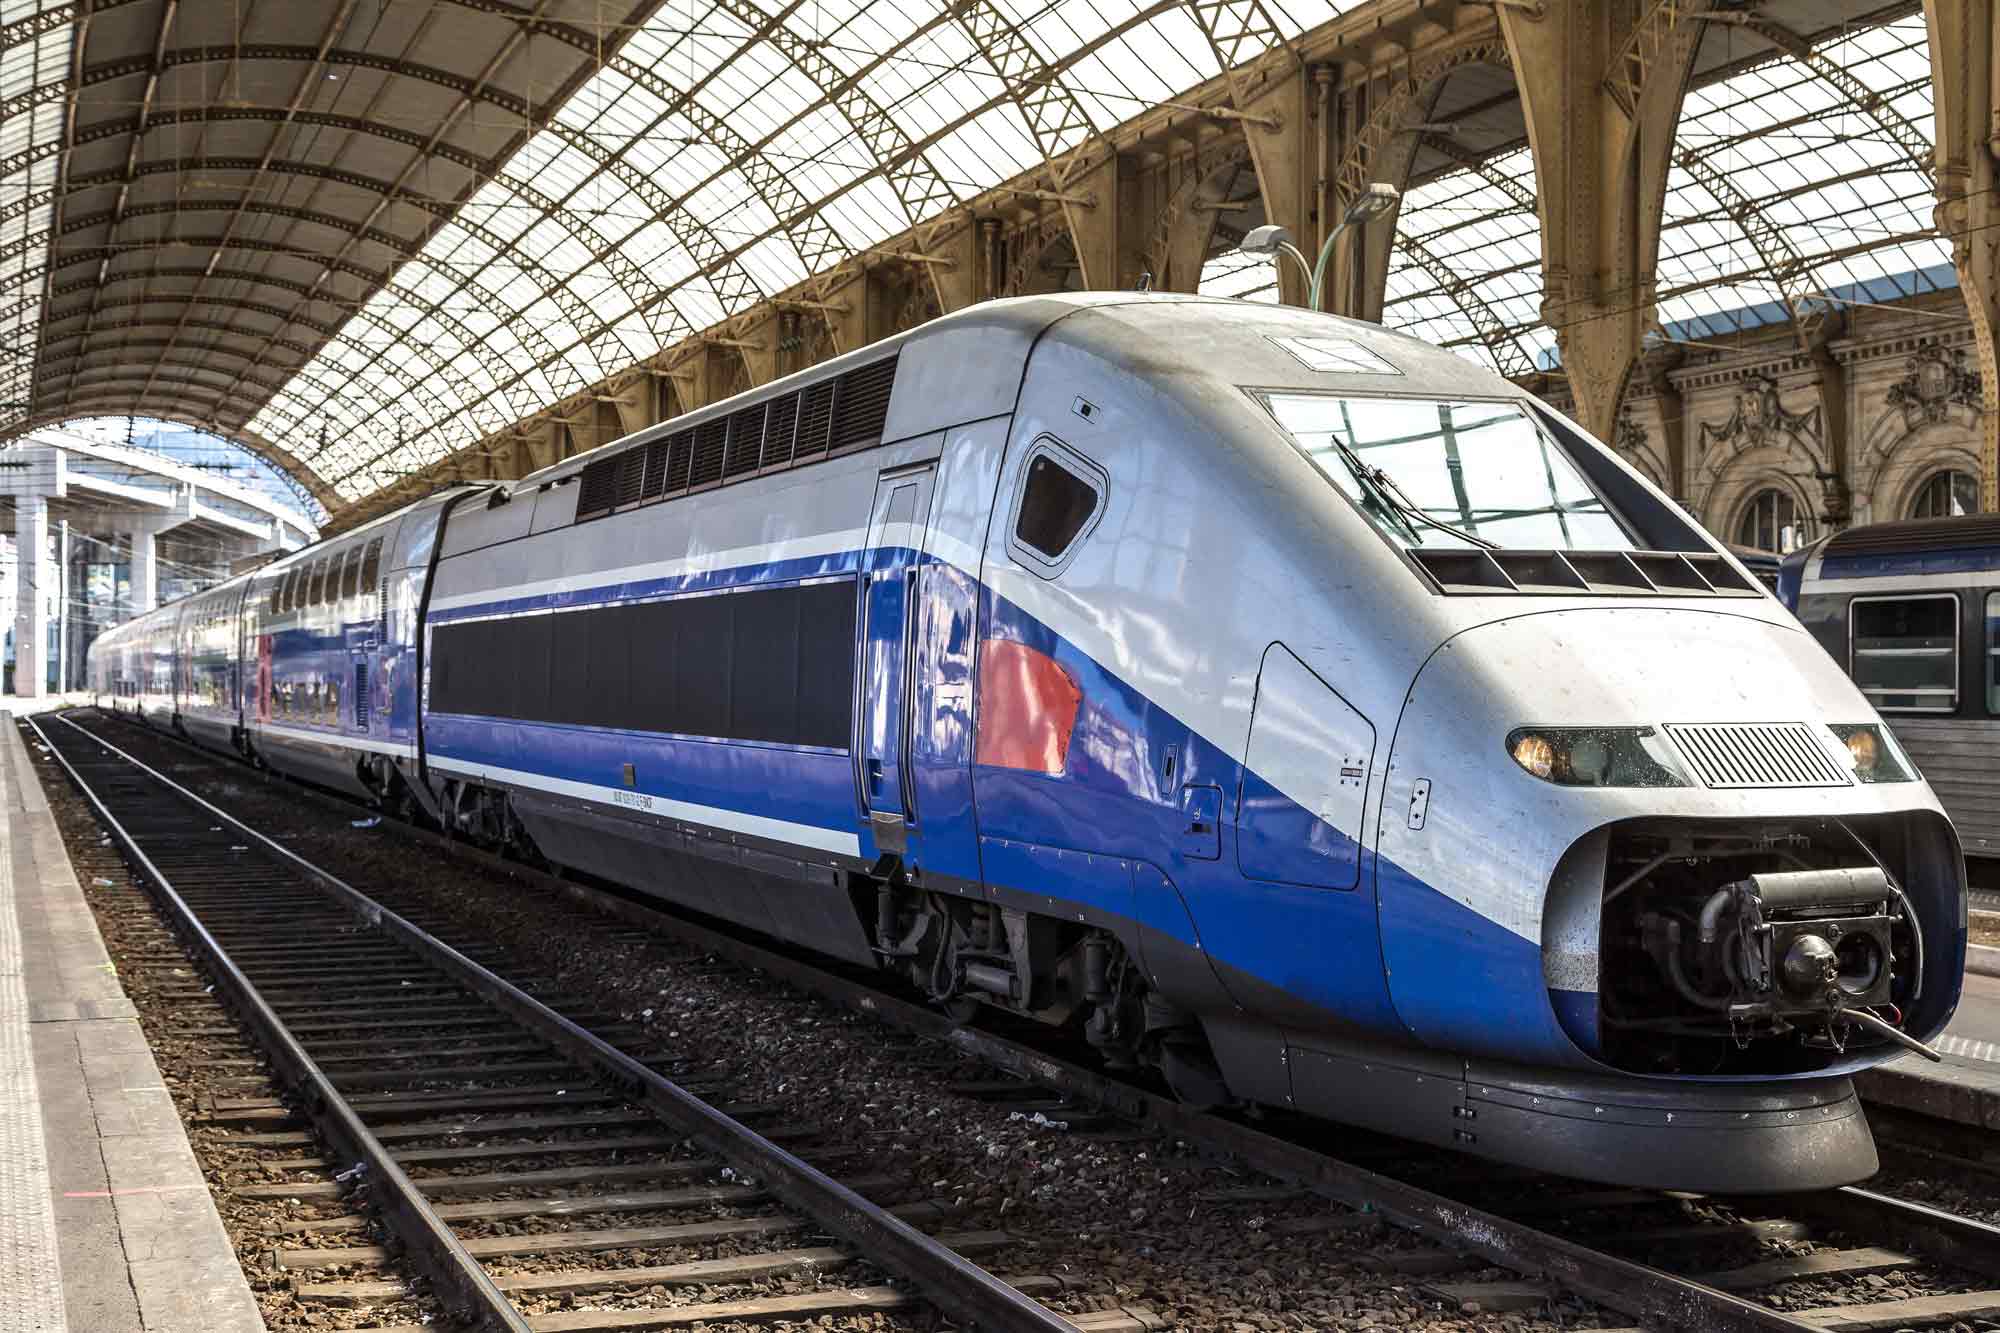 Inside the TGV - Picture of TGV, Paris - Tripadvisor